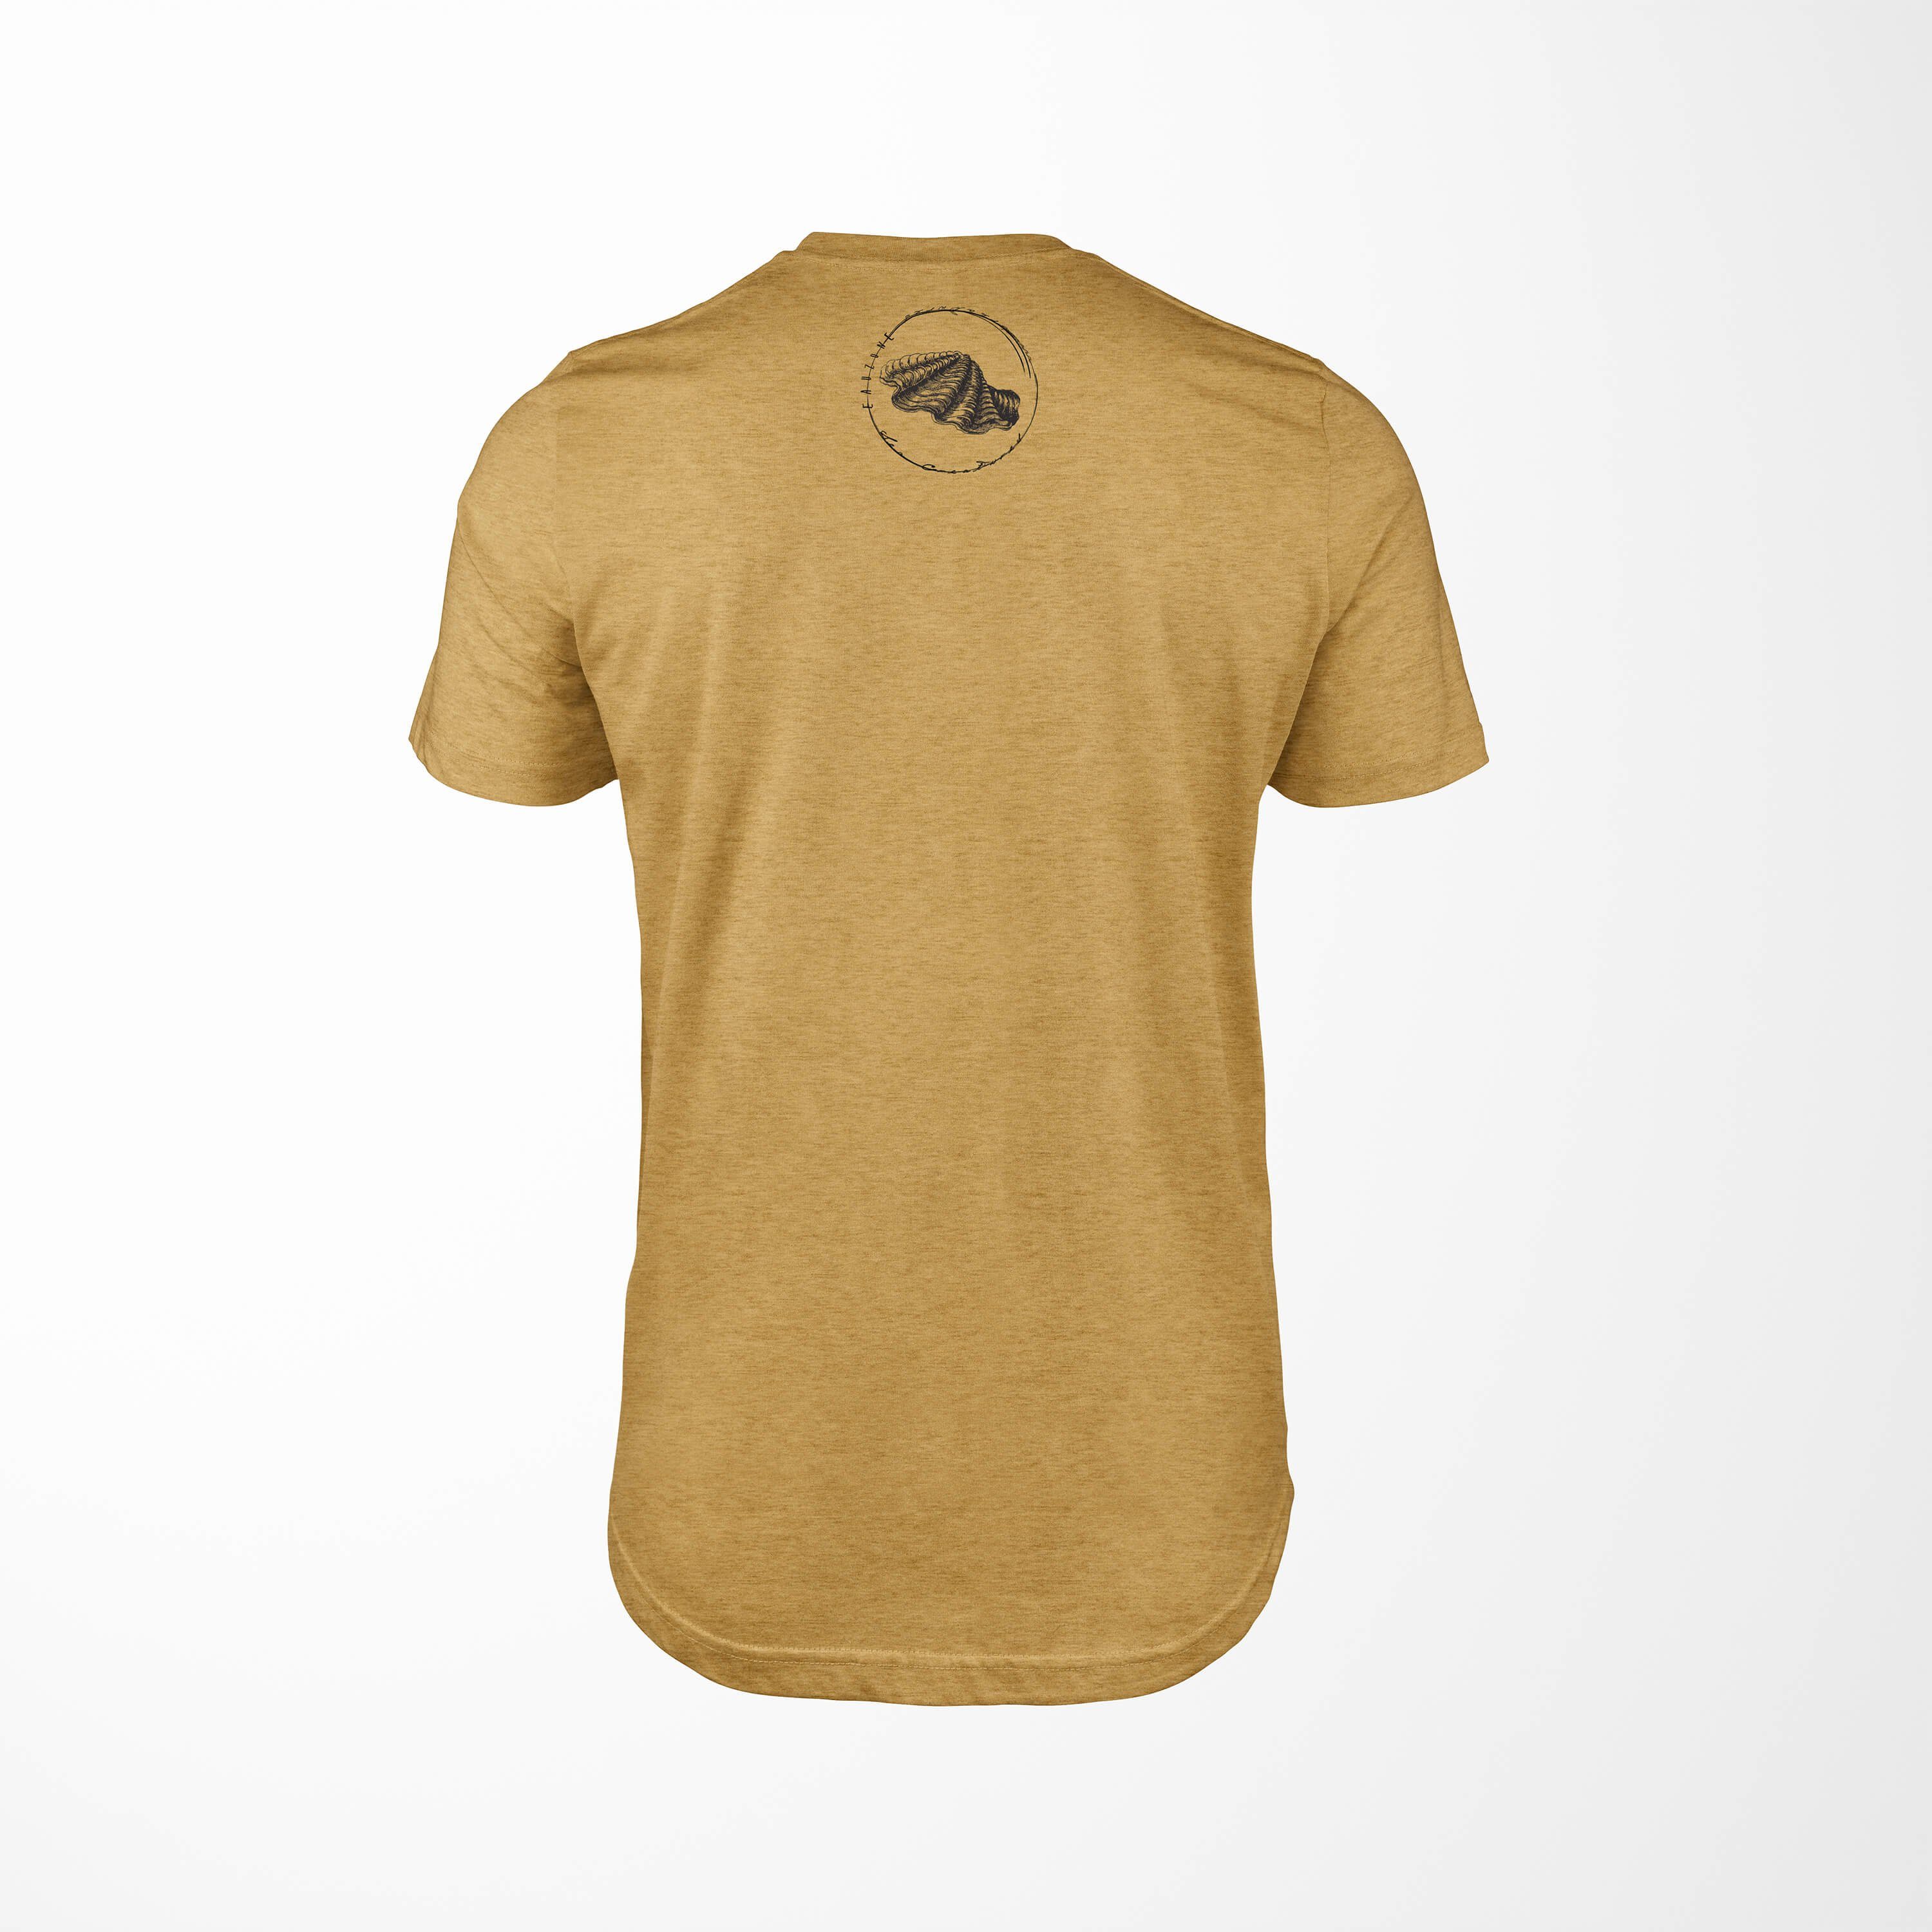 - 088 Struktur und Fische T-Shirt Sea Sea Tiefsee Serie: Sinus Gold sportlicher Antique T-Shirt Schnitt feine / Art Creatures,